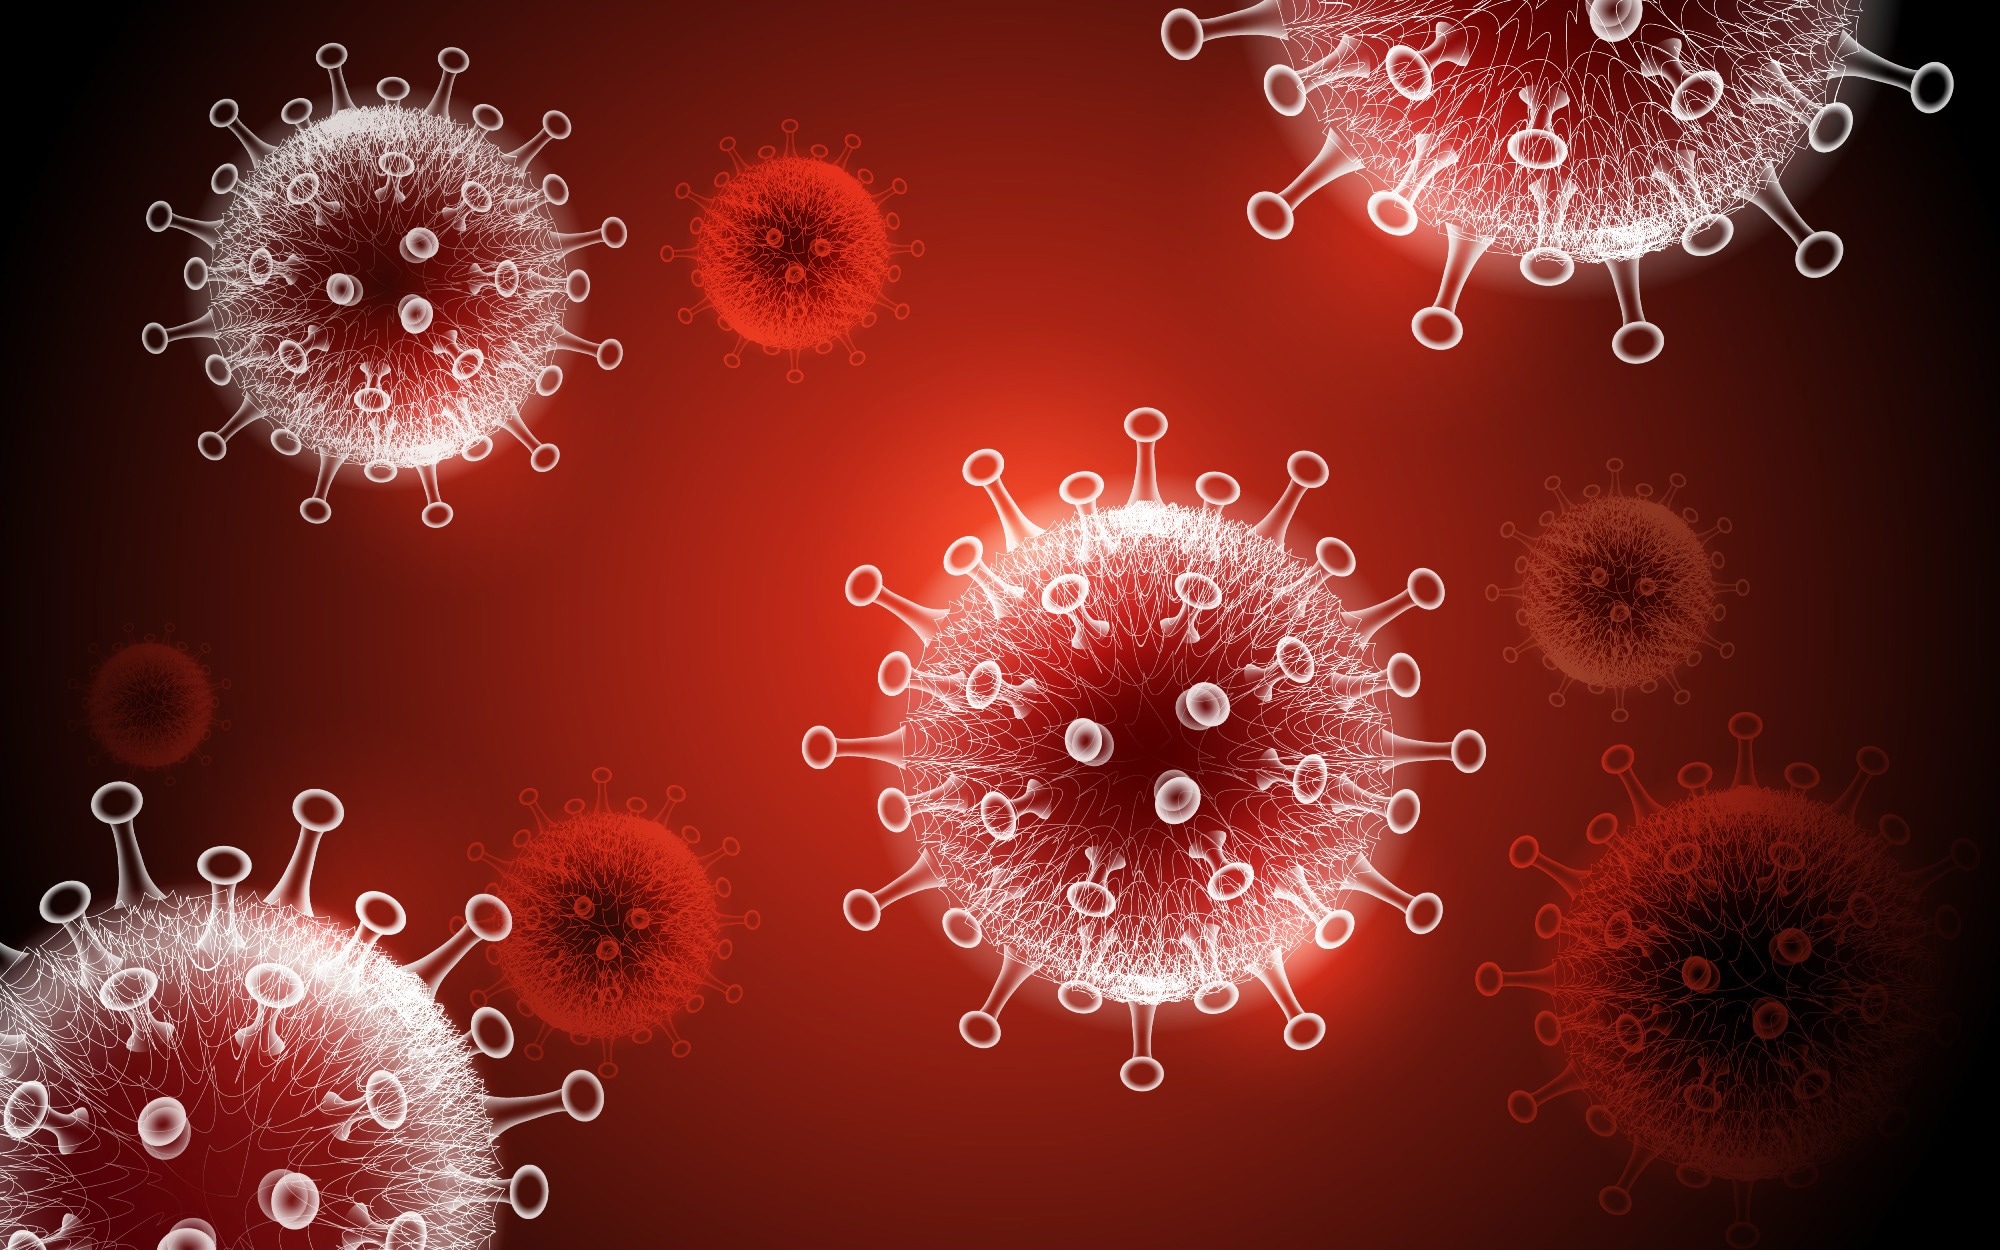 مطالعه: توسعه سریع یک زیرساخت شبکه یکپارچه برای انجام فاز 3 آزمایش واکسن کووید-19.  اعتبار تصویر: CKA/Shutterstock